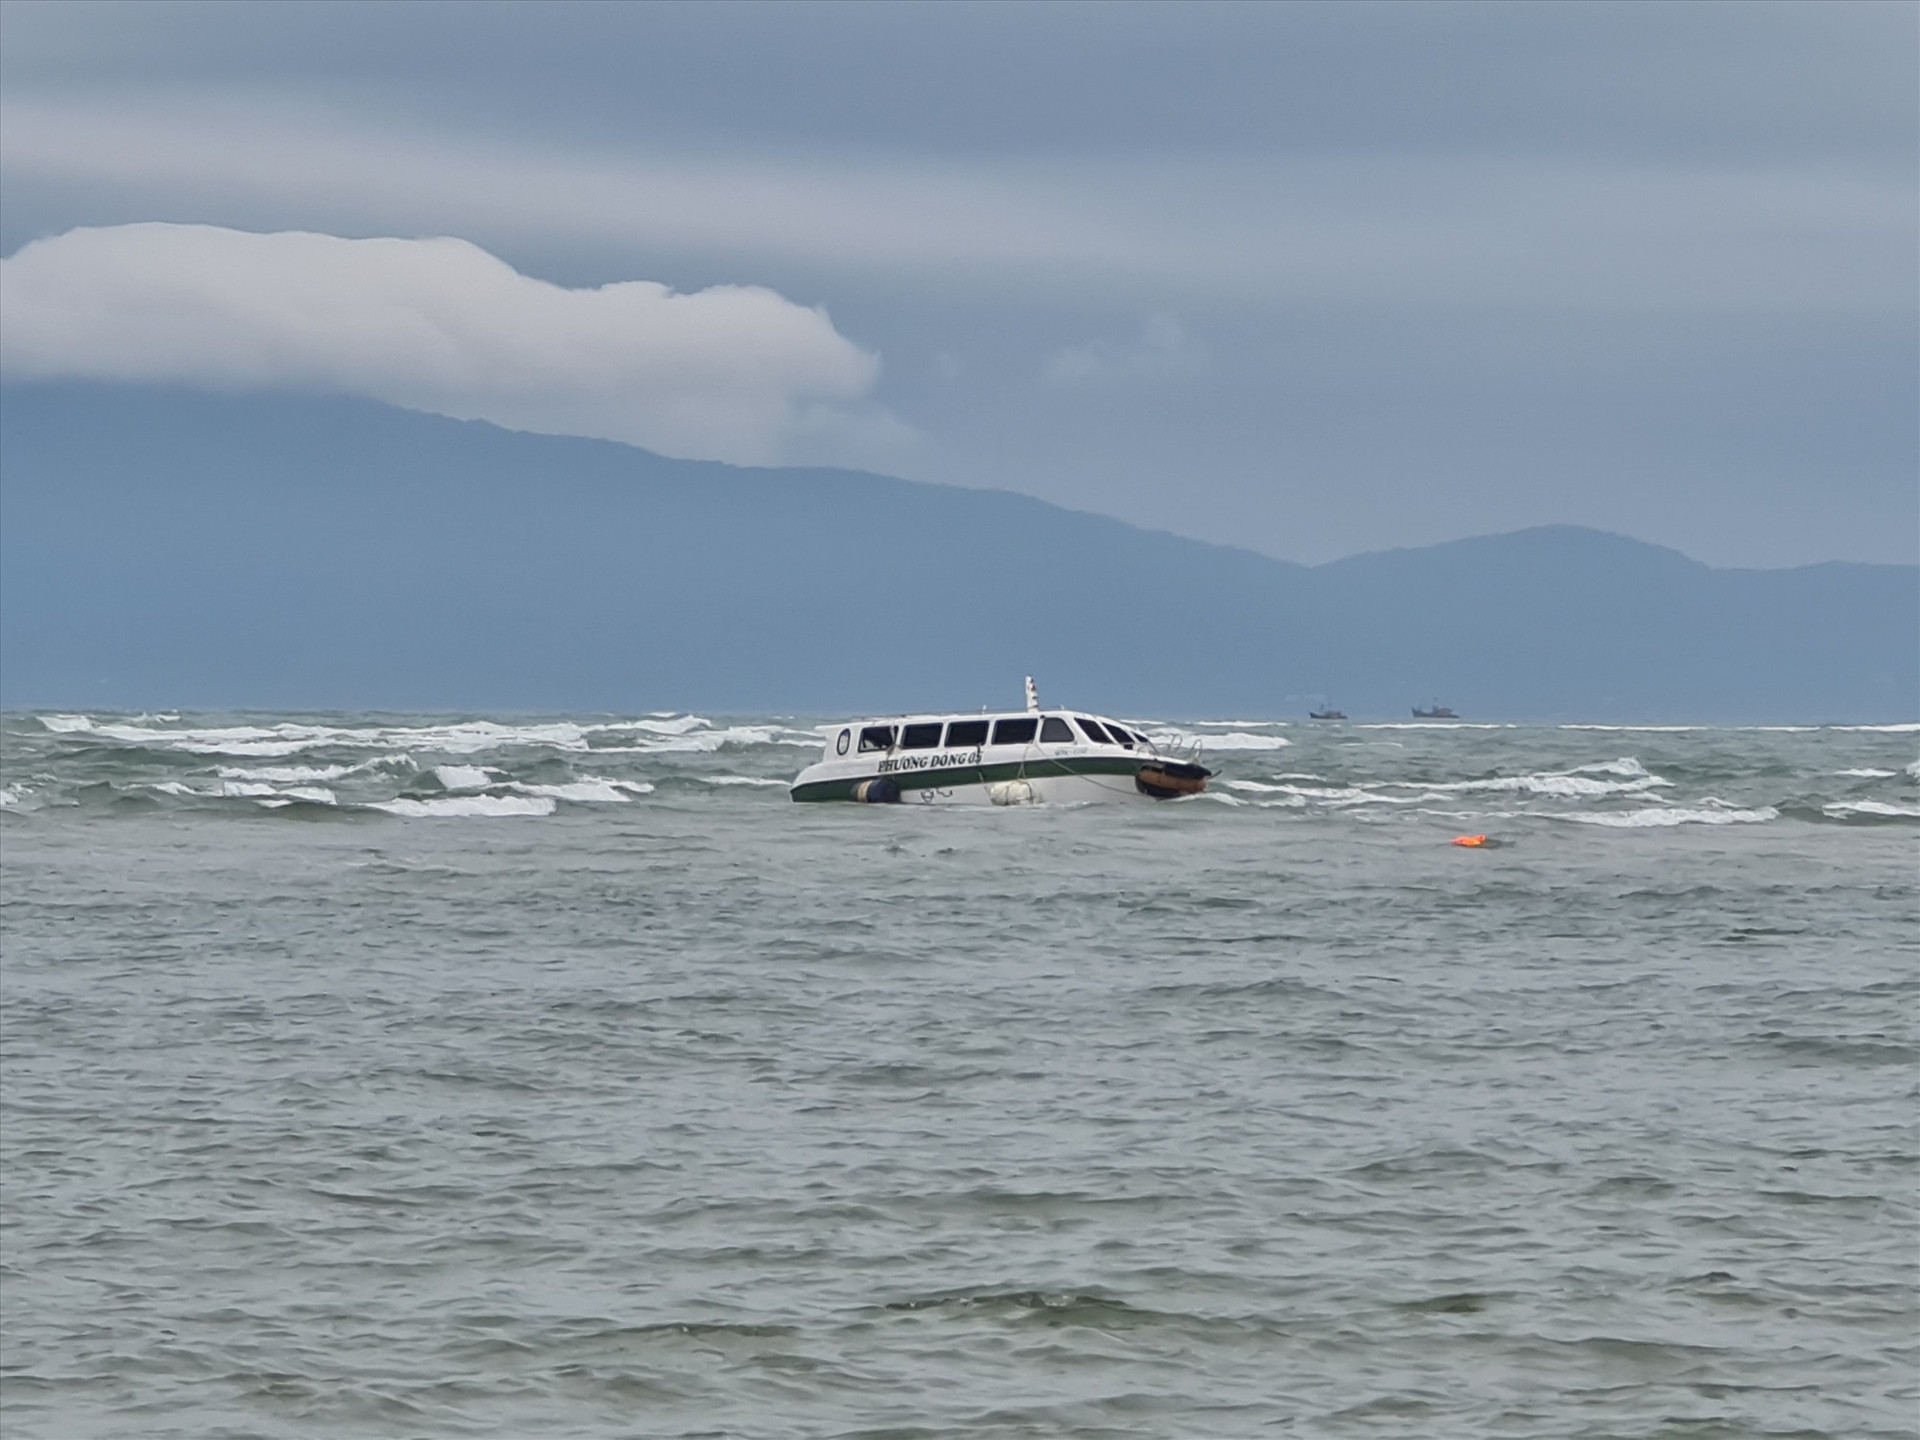 Ca nô du lịch QNa 1152 chở 39 người đi từ Cù Lao Chàm vào bến Cửa Đại thì bất ngờ bị chìm. Ảnh: PV